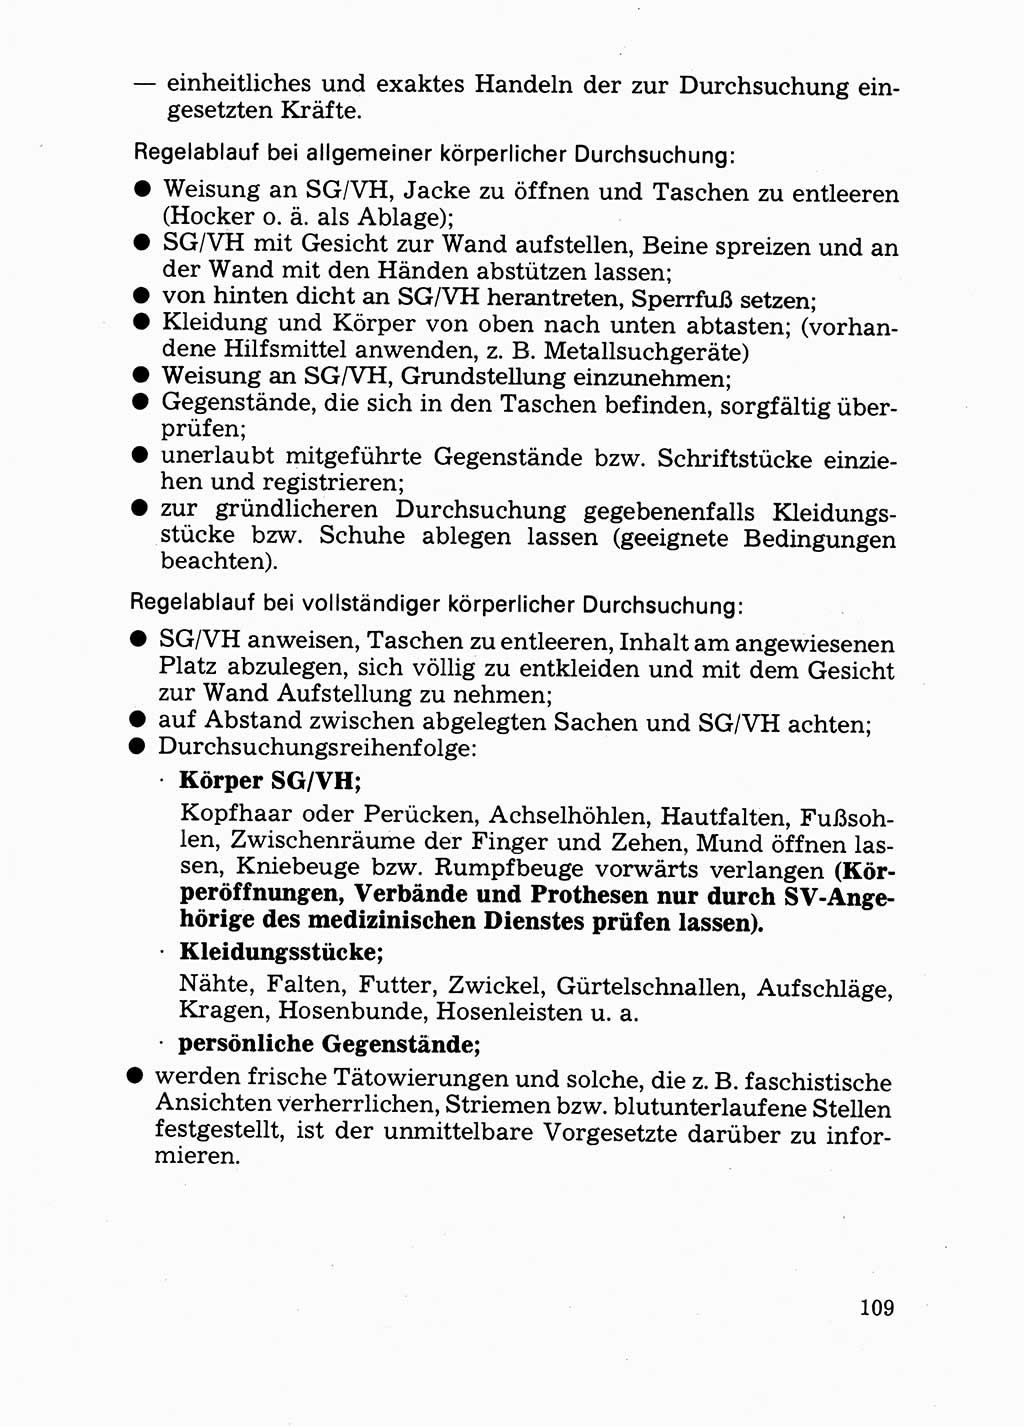 Handbuch für operative Dienste, Abteilung Strafvollzug (SV) [Ministerium des Innern (MdI) Deutsche Demokratische Republik (DDR)] 1981, Seite 109 (Hb. op. D. Abt. SV MdI DDR 1981, S. 109)